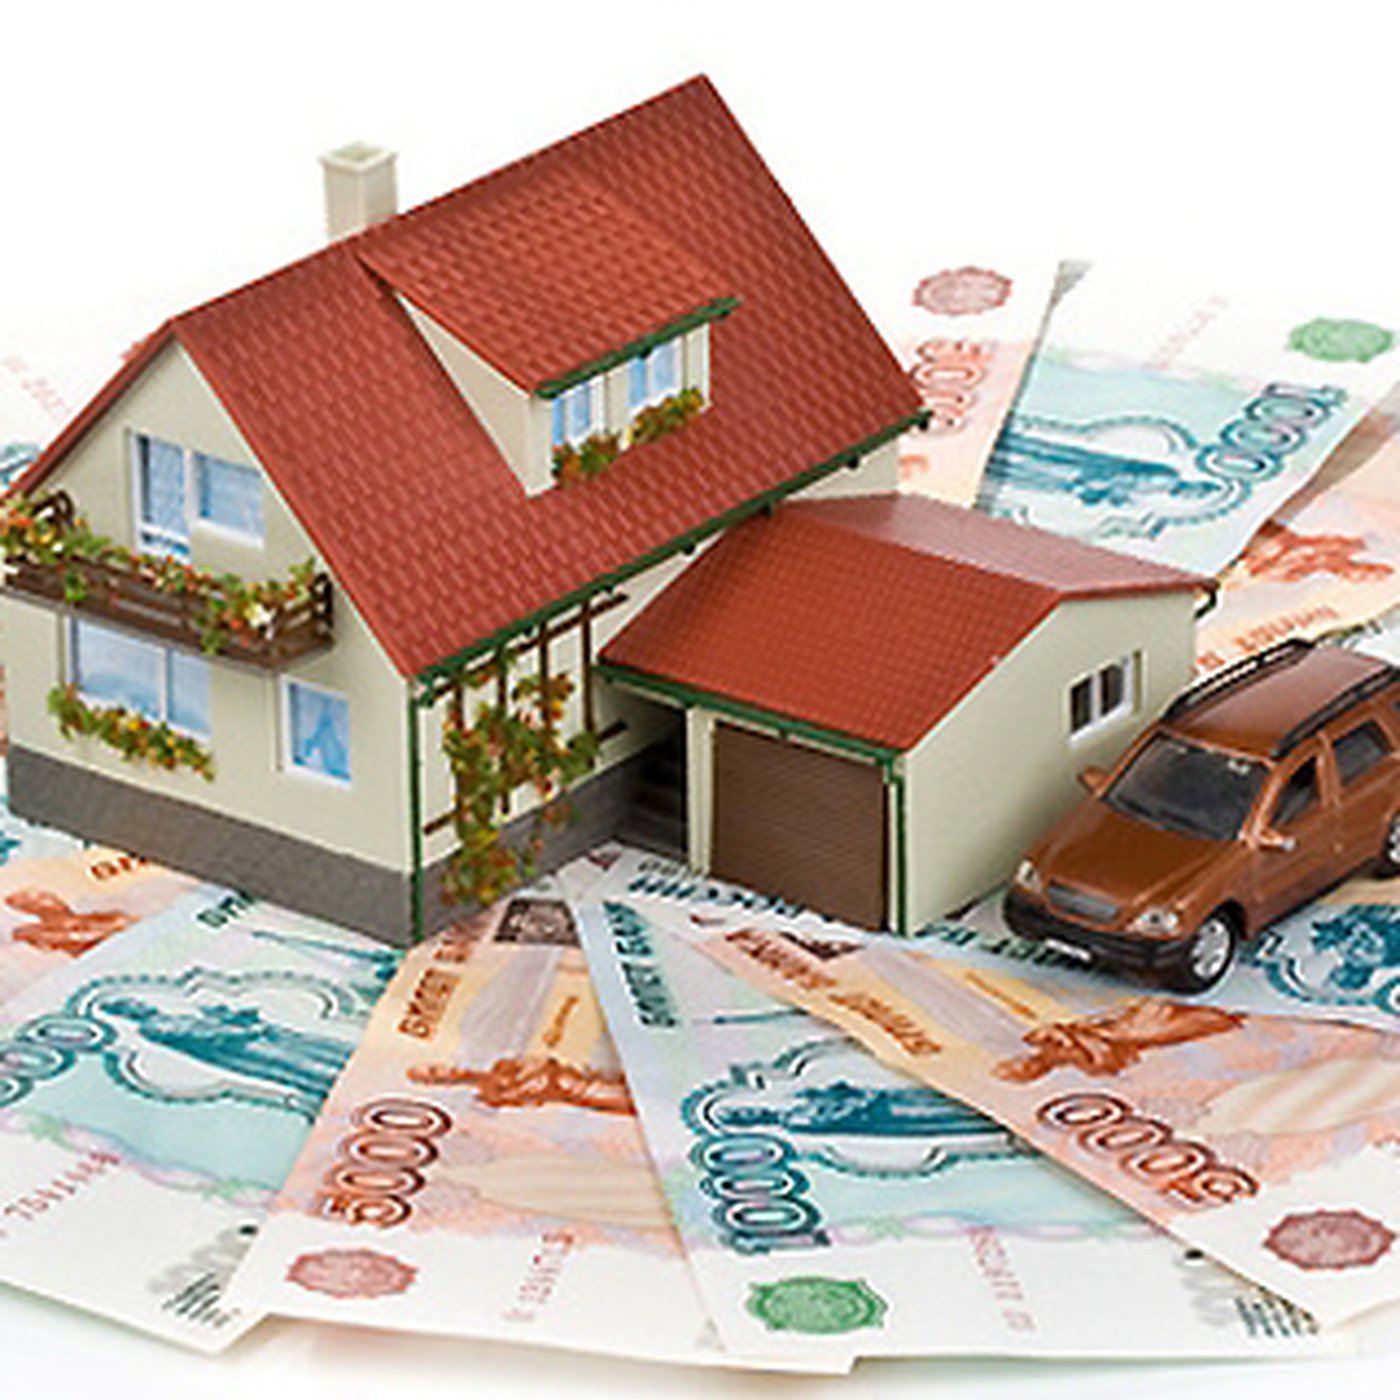 Оформить кредит в залог недвижимости. Деньги на дом. Дом машина деньги. Деньги и имущество. Достаток в доме.